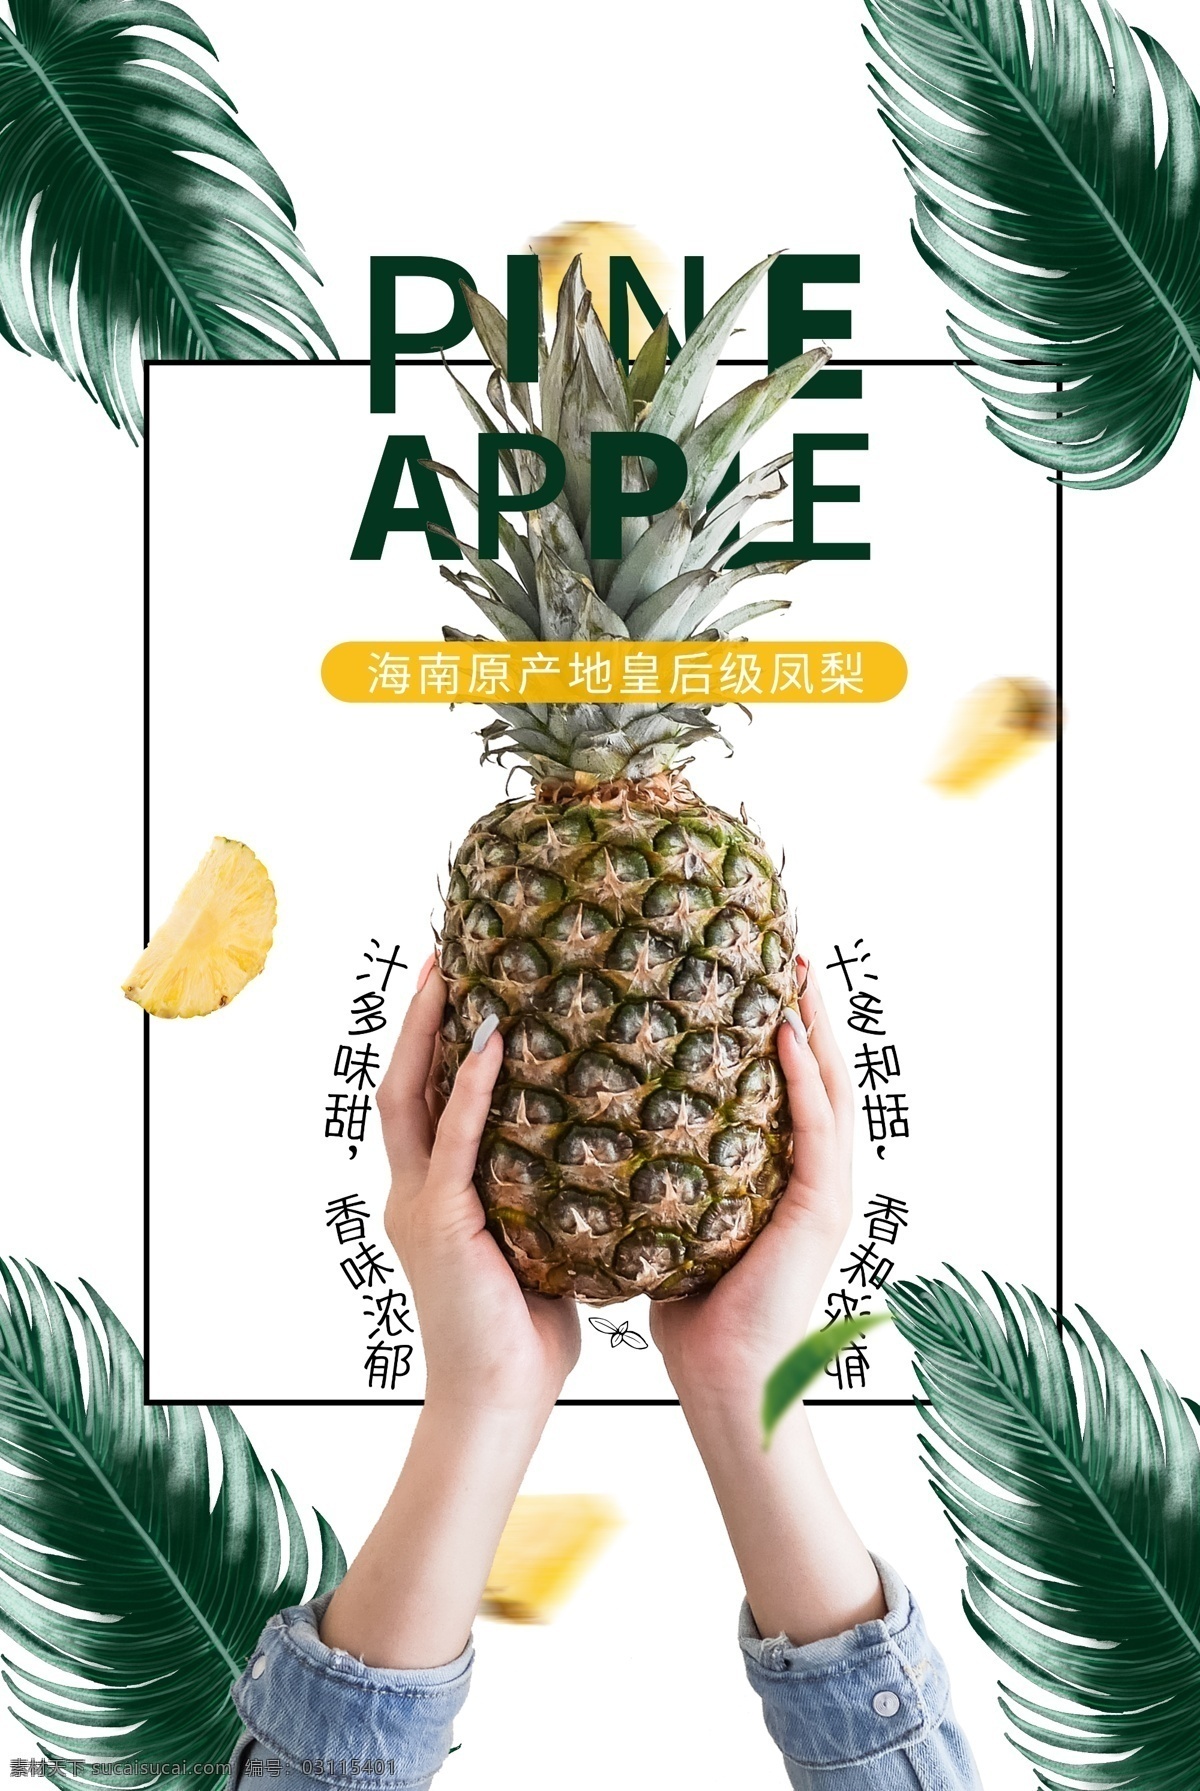 菠萝 凤梨 水果 宣传海报 宣传 海报 餐饮美食 类